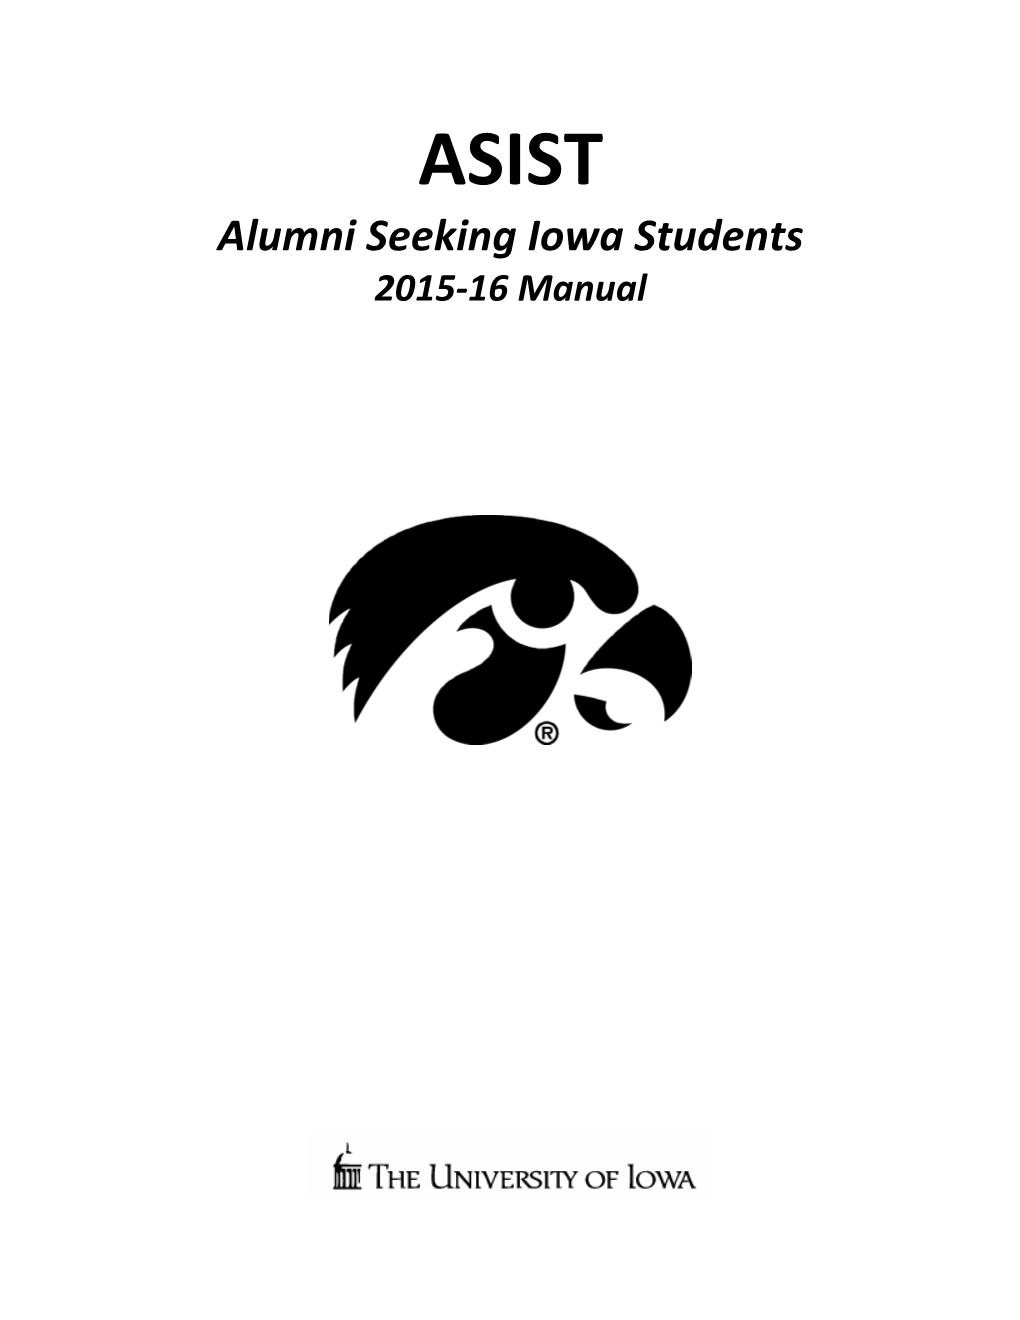 ASIST Alumni Seeking Iowa Students 2015-16 Manual